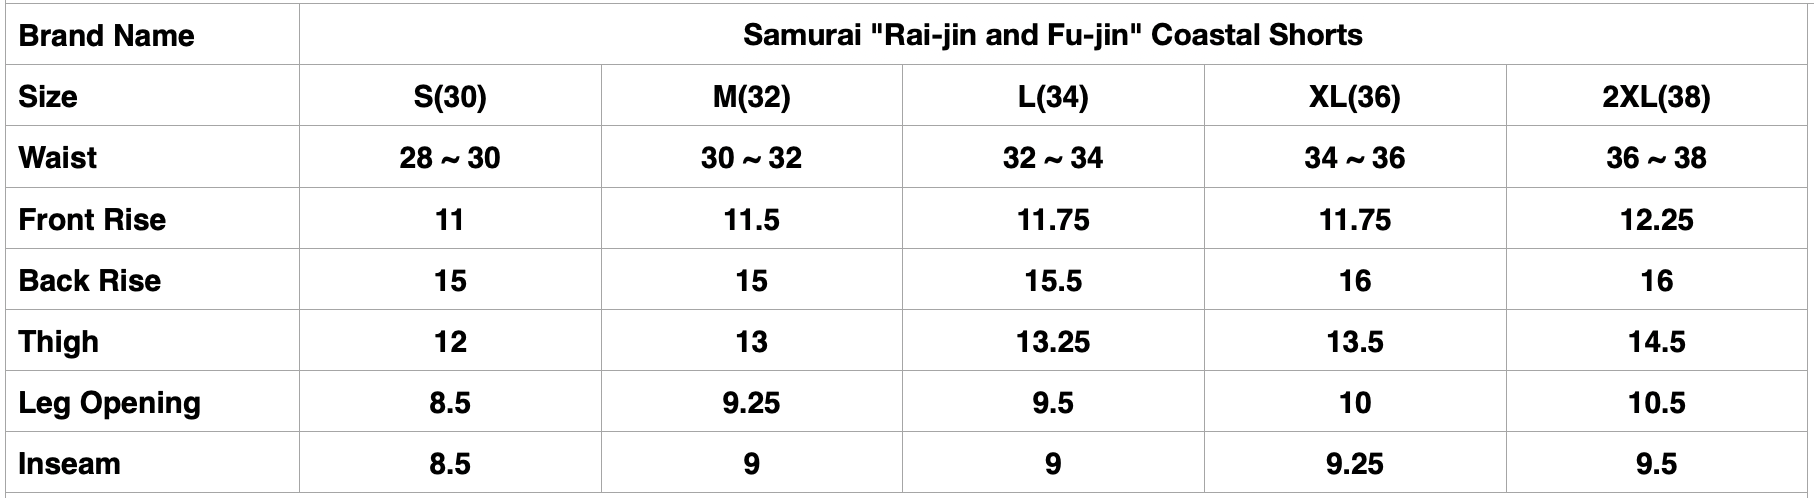 Samurai "Rai-jin and Fu-jin" Coastal Shorts